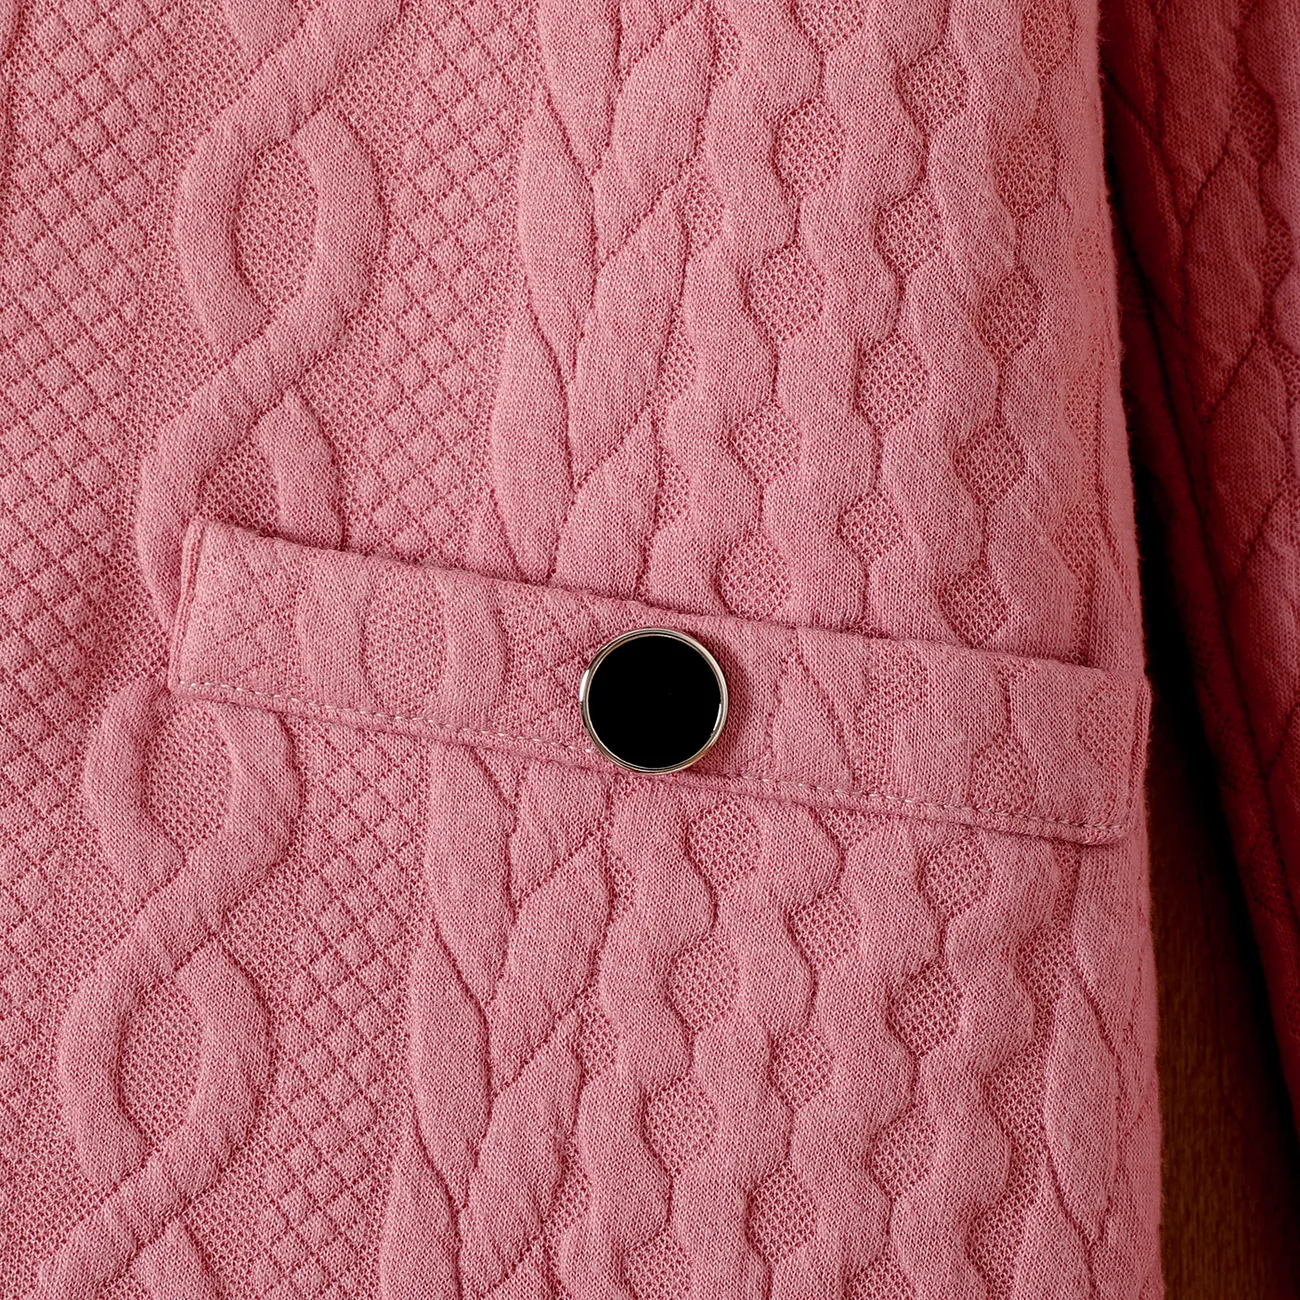 Kinder Mädchen Hypertaktil Unifarben Kleider rosa big image 1